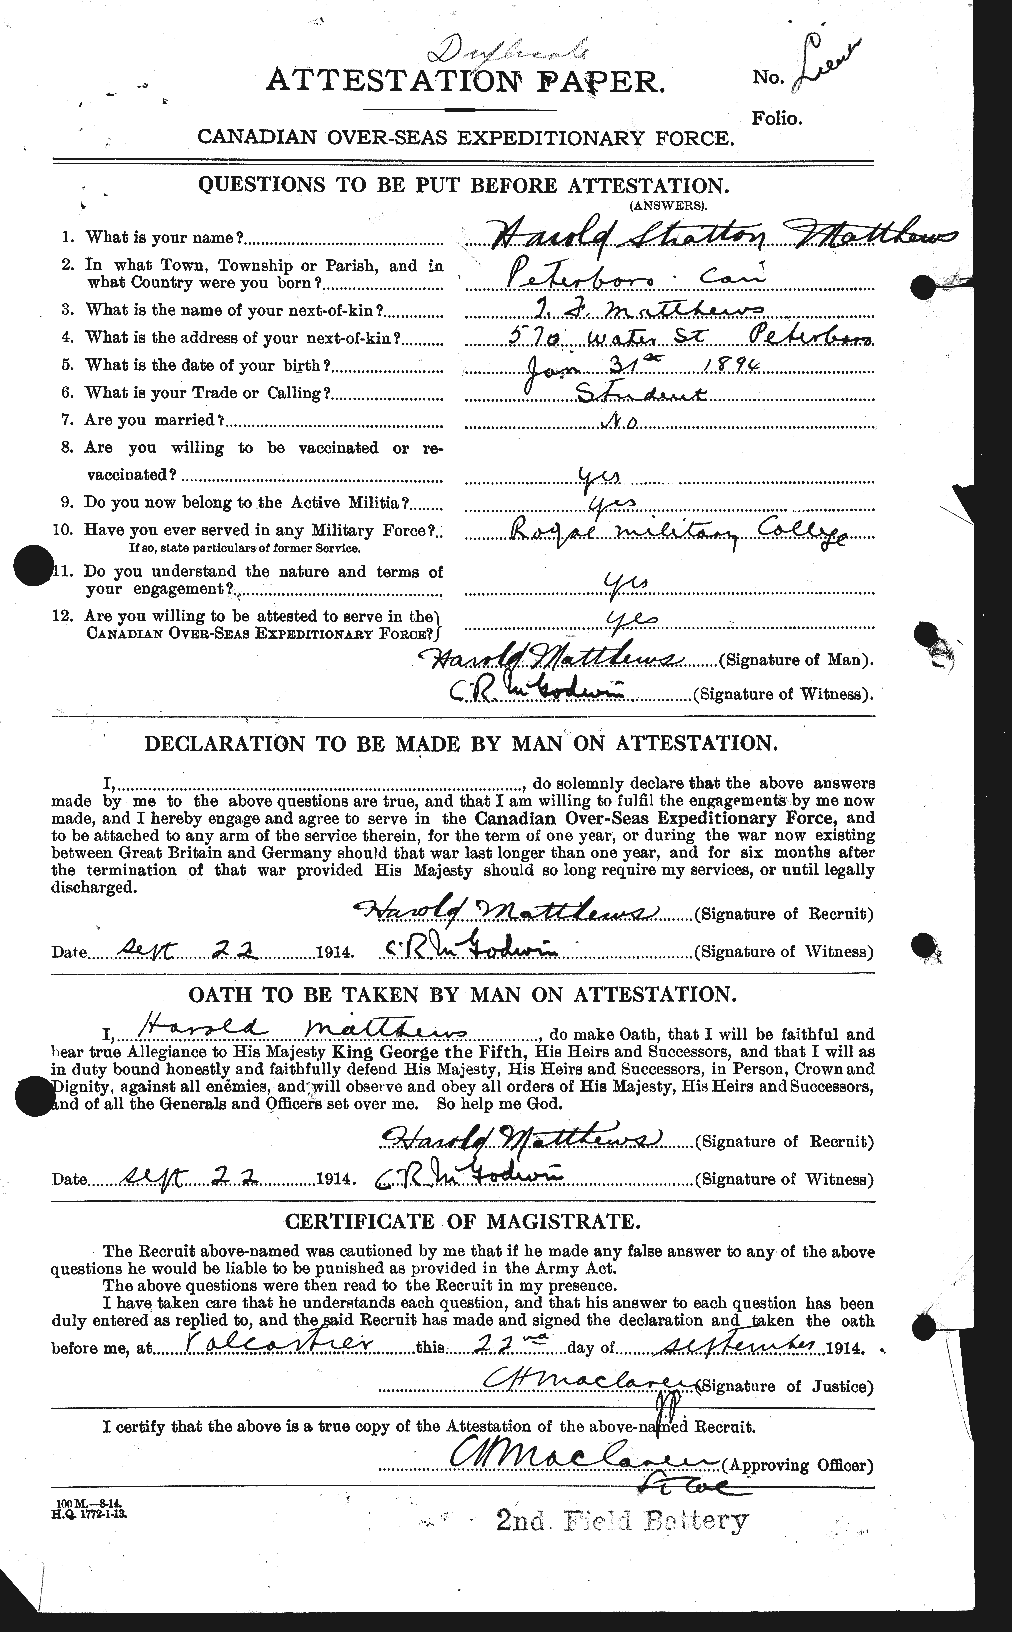 Dossiers du Personnel de la Première Guerre mondiale - CEC 491155a